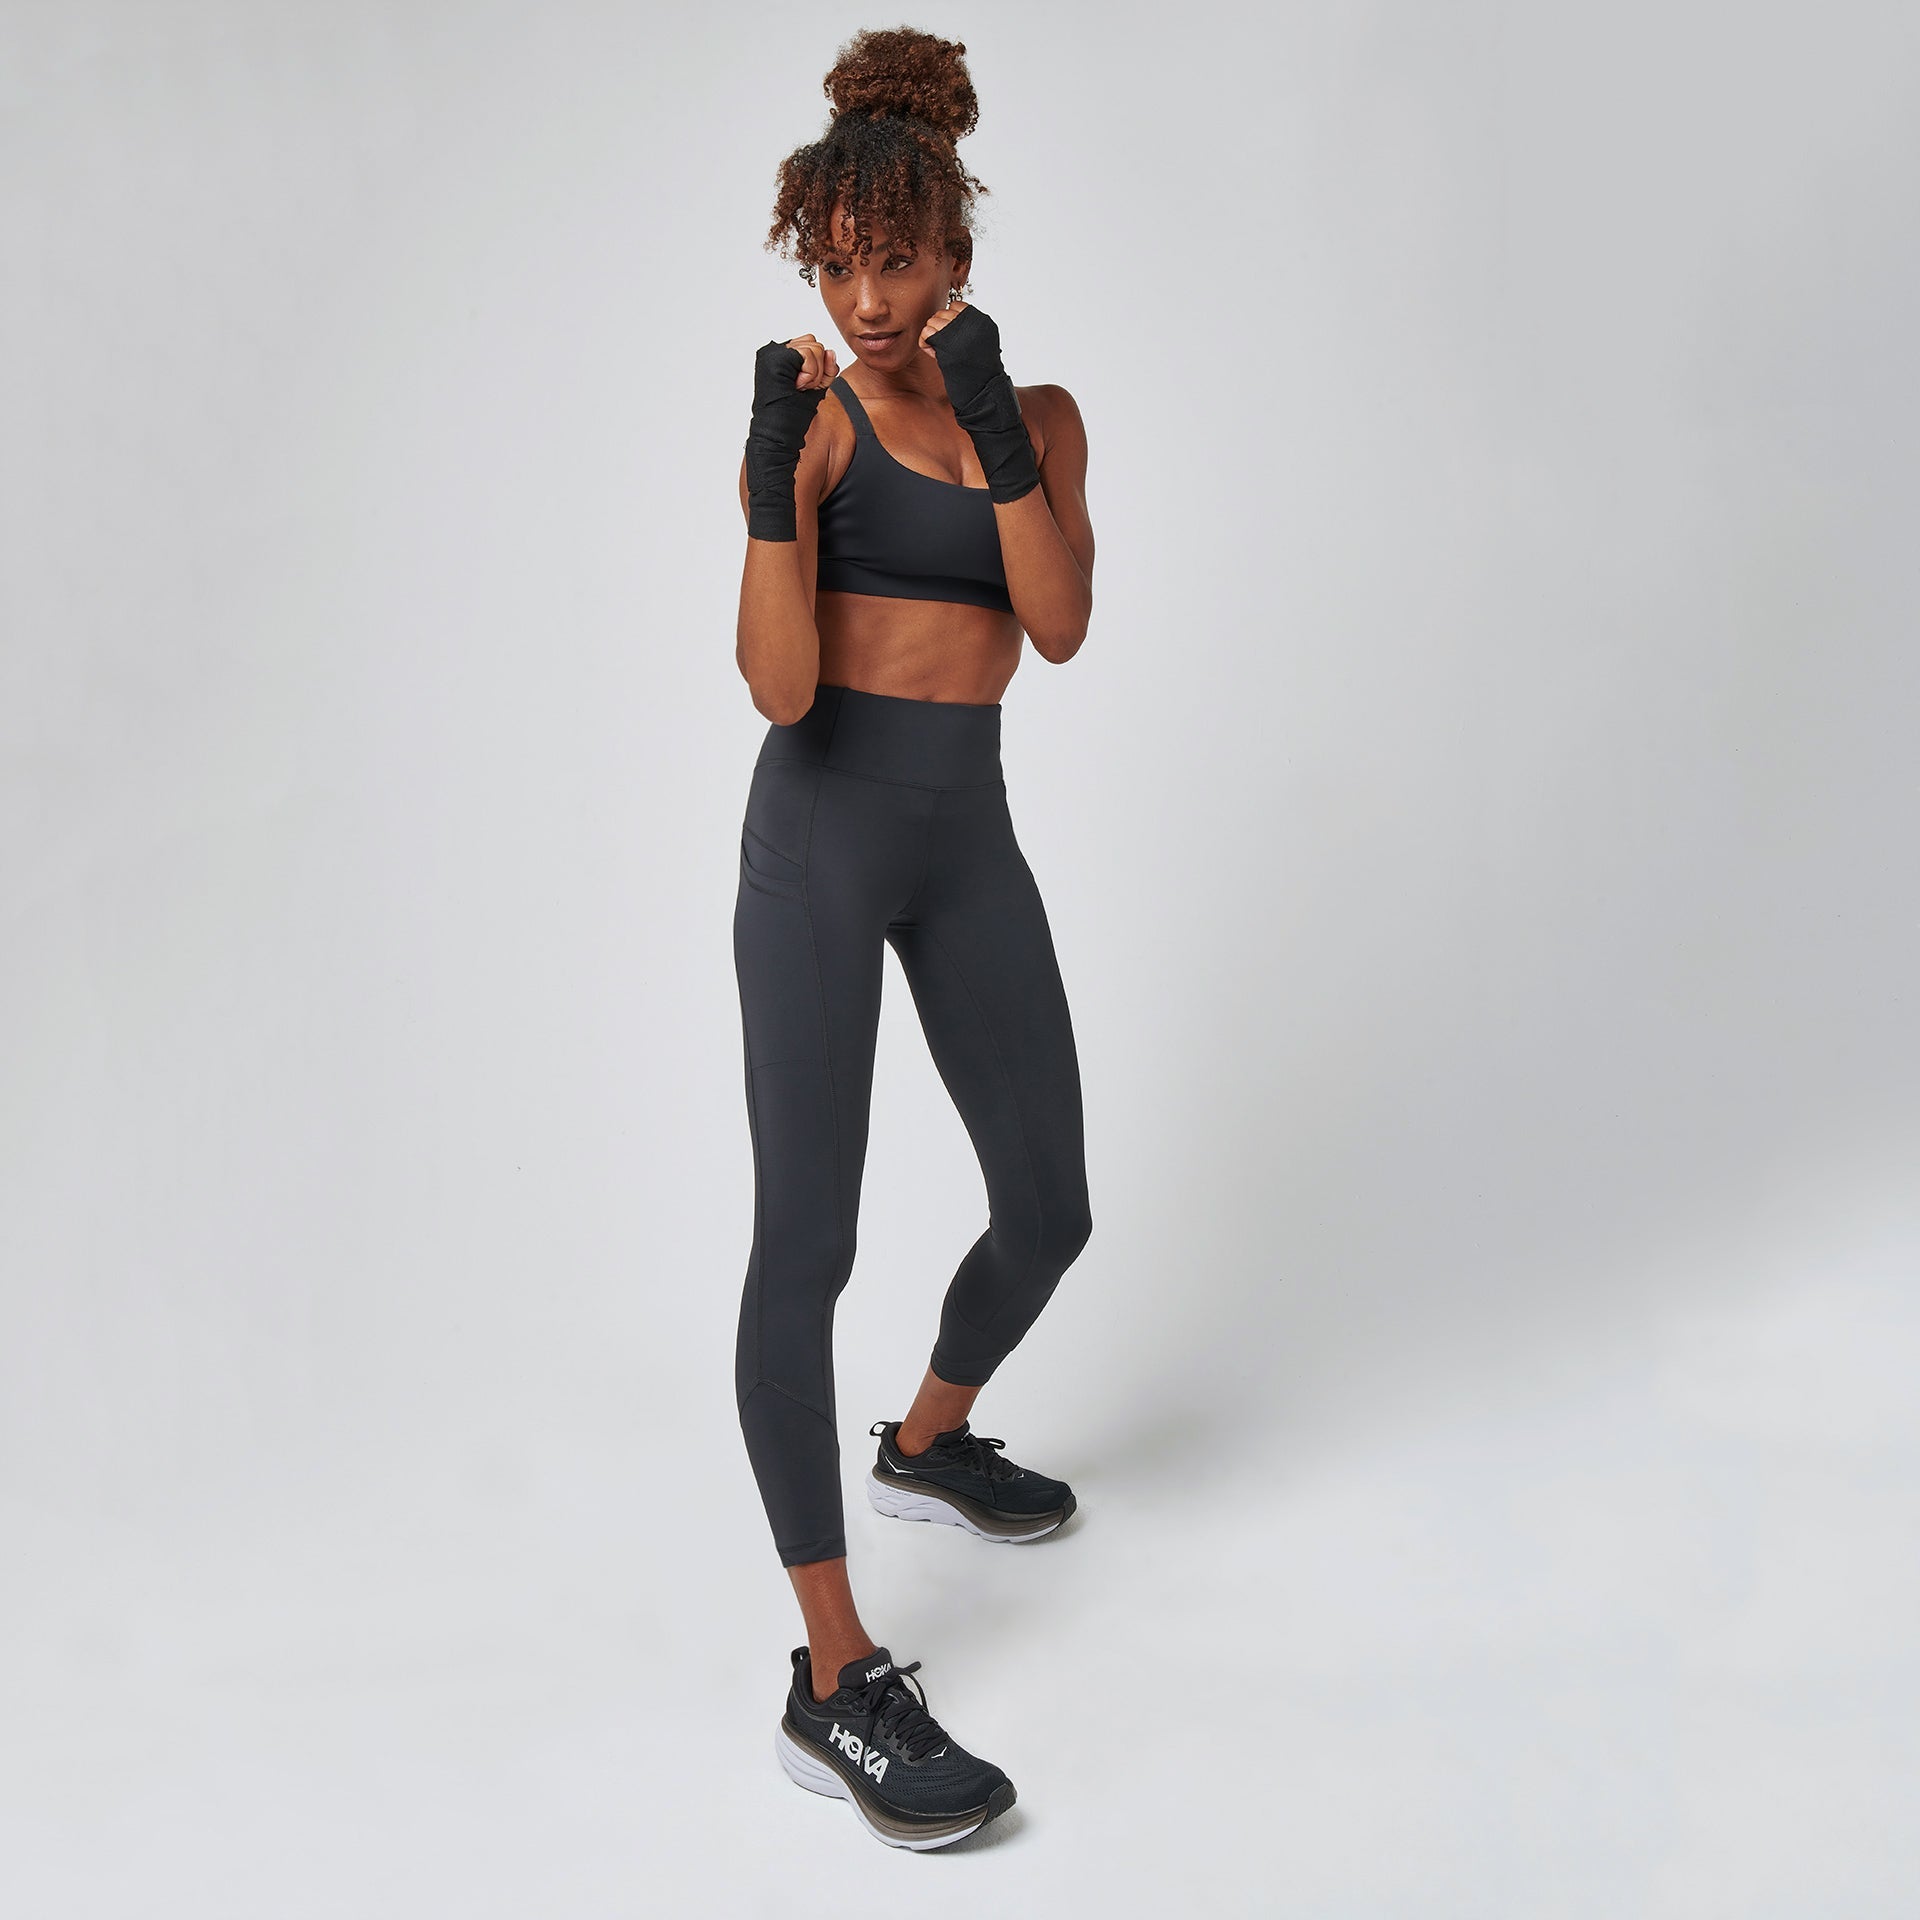 Women's Sports Leggings BAS BLACK Inspire - inSPORTline